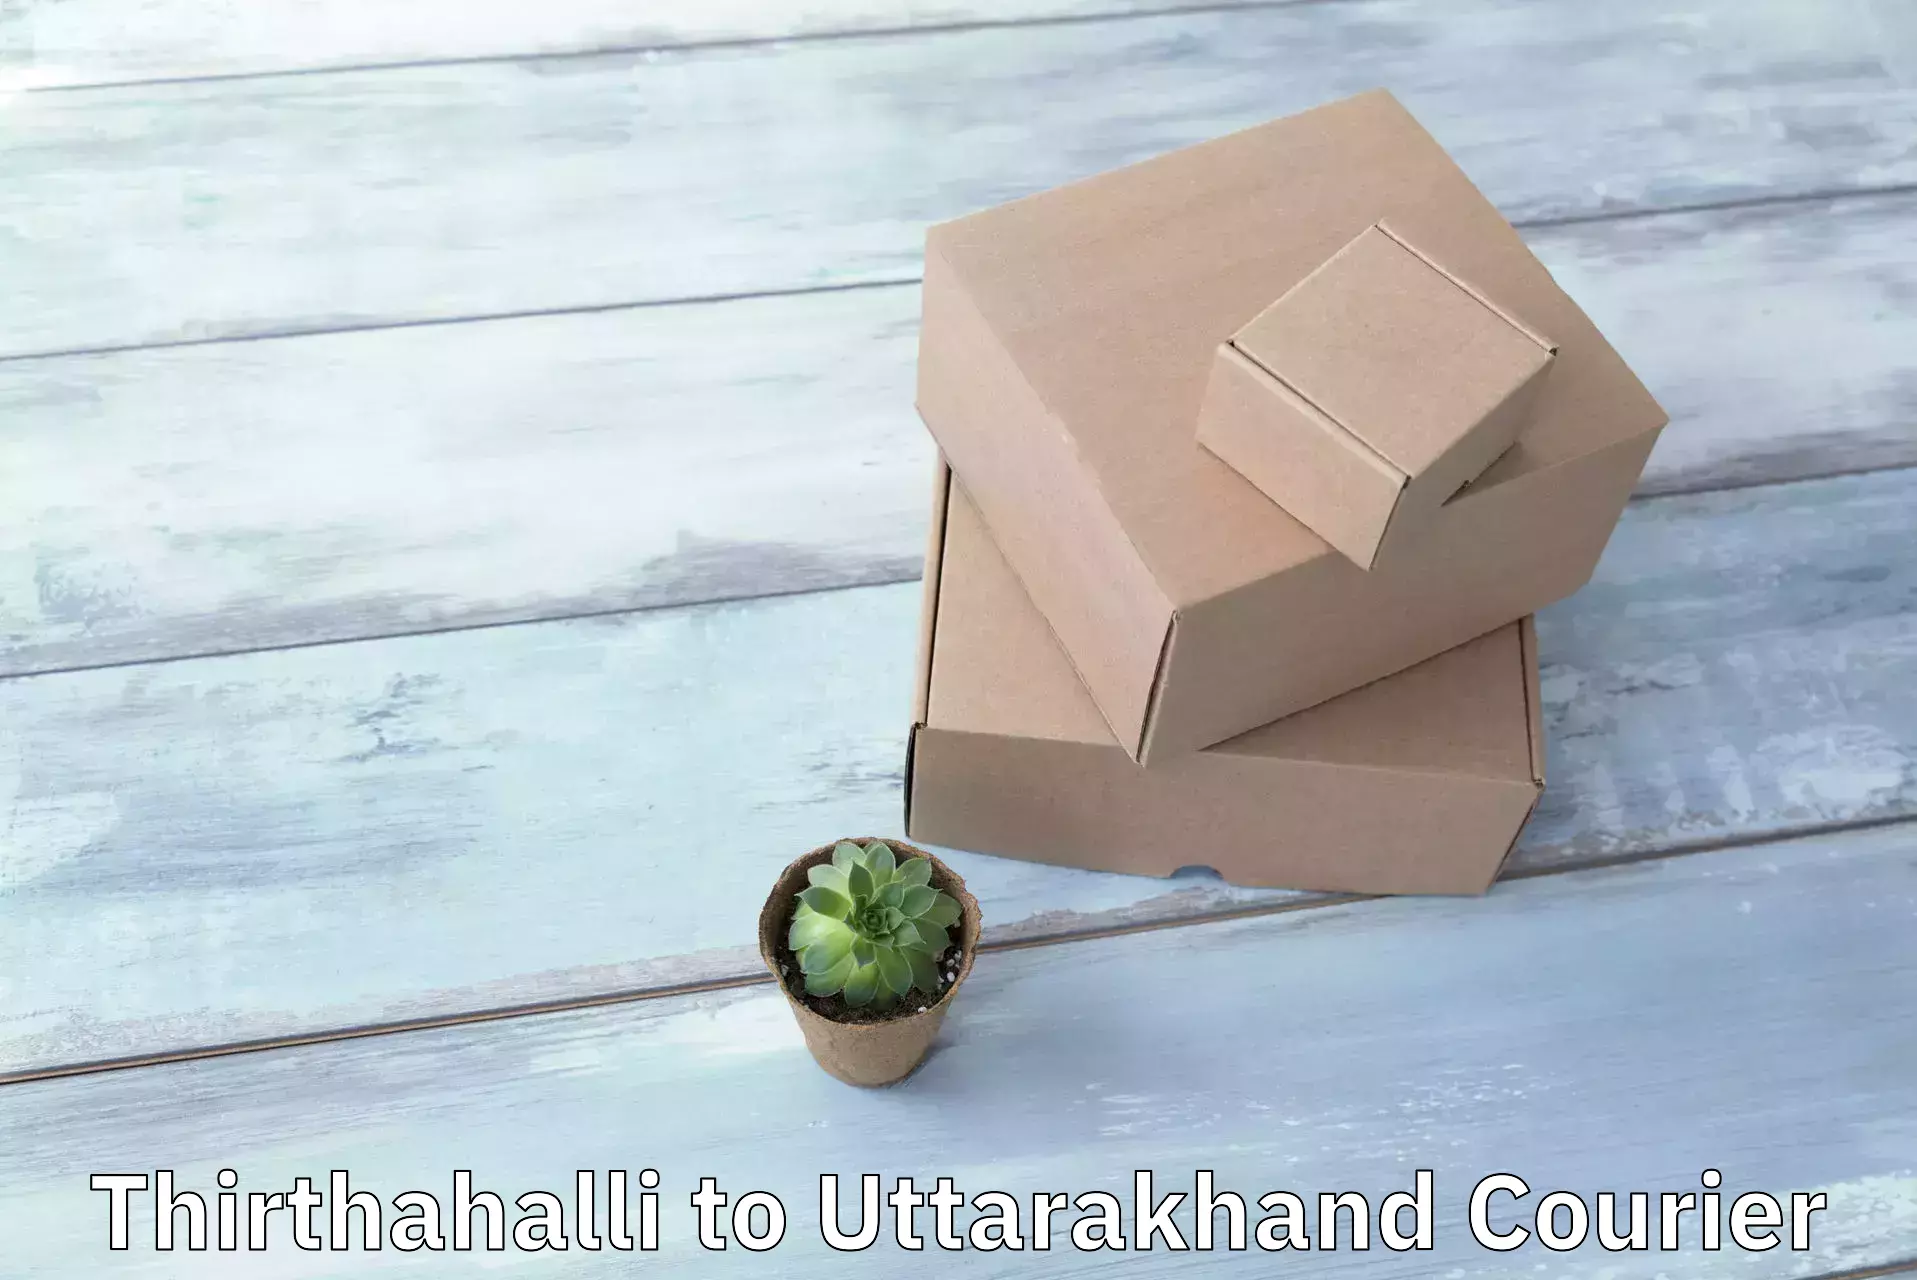 Multi-service courier options Thirthahalli to Kotdwara